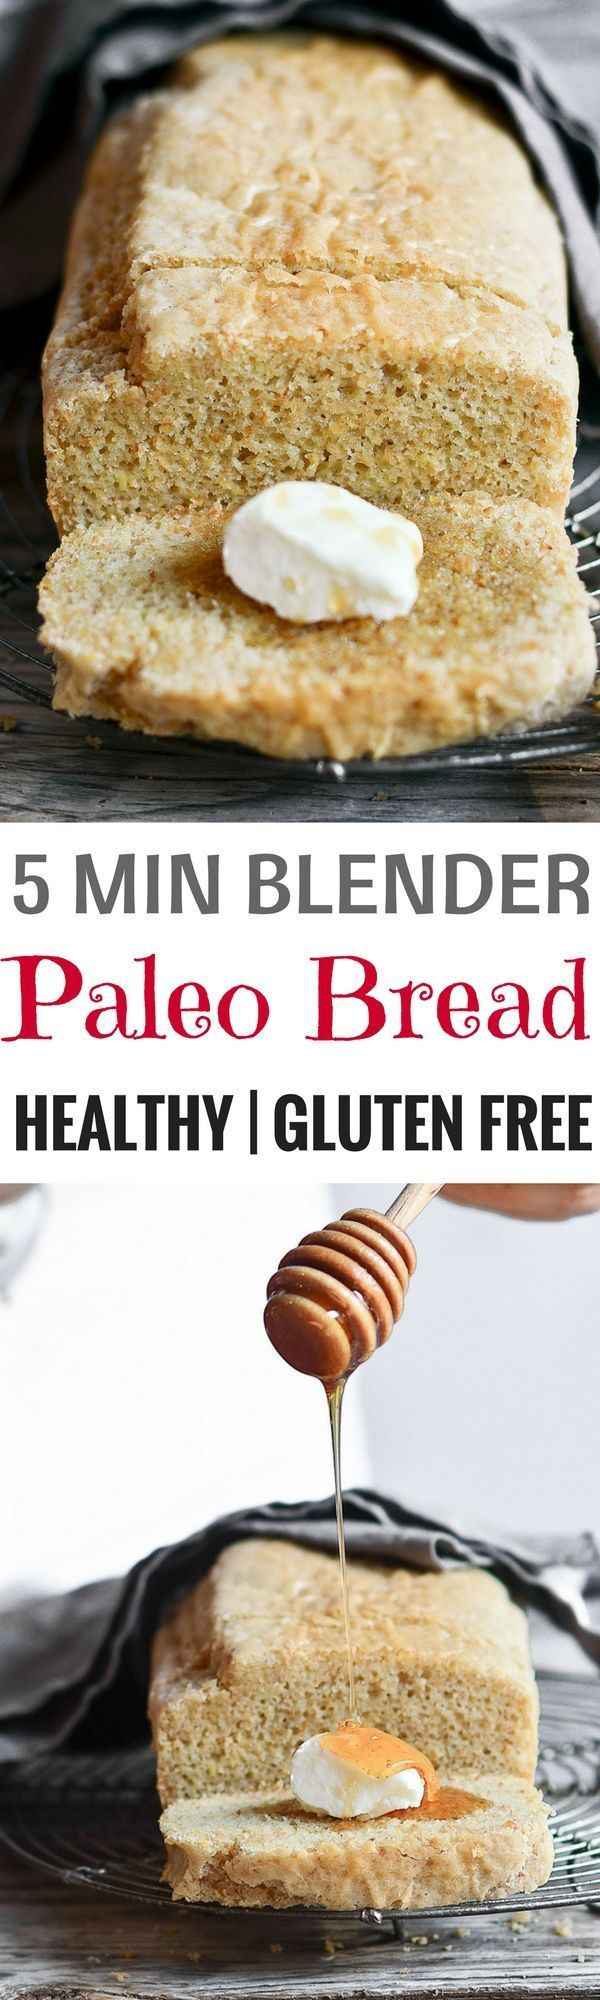 Healthy Gluten Free Bread Recipes
 Healthy 5 Minute Gluten Free Paleo Bread Recipe